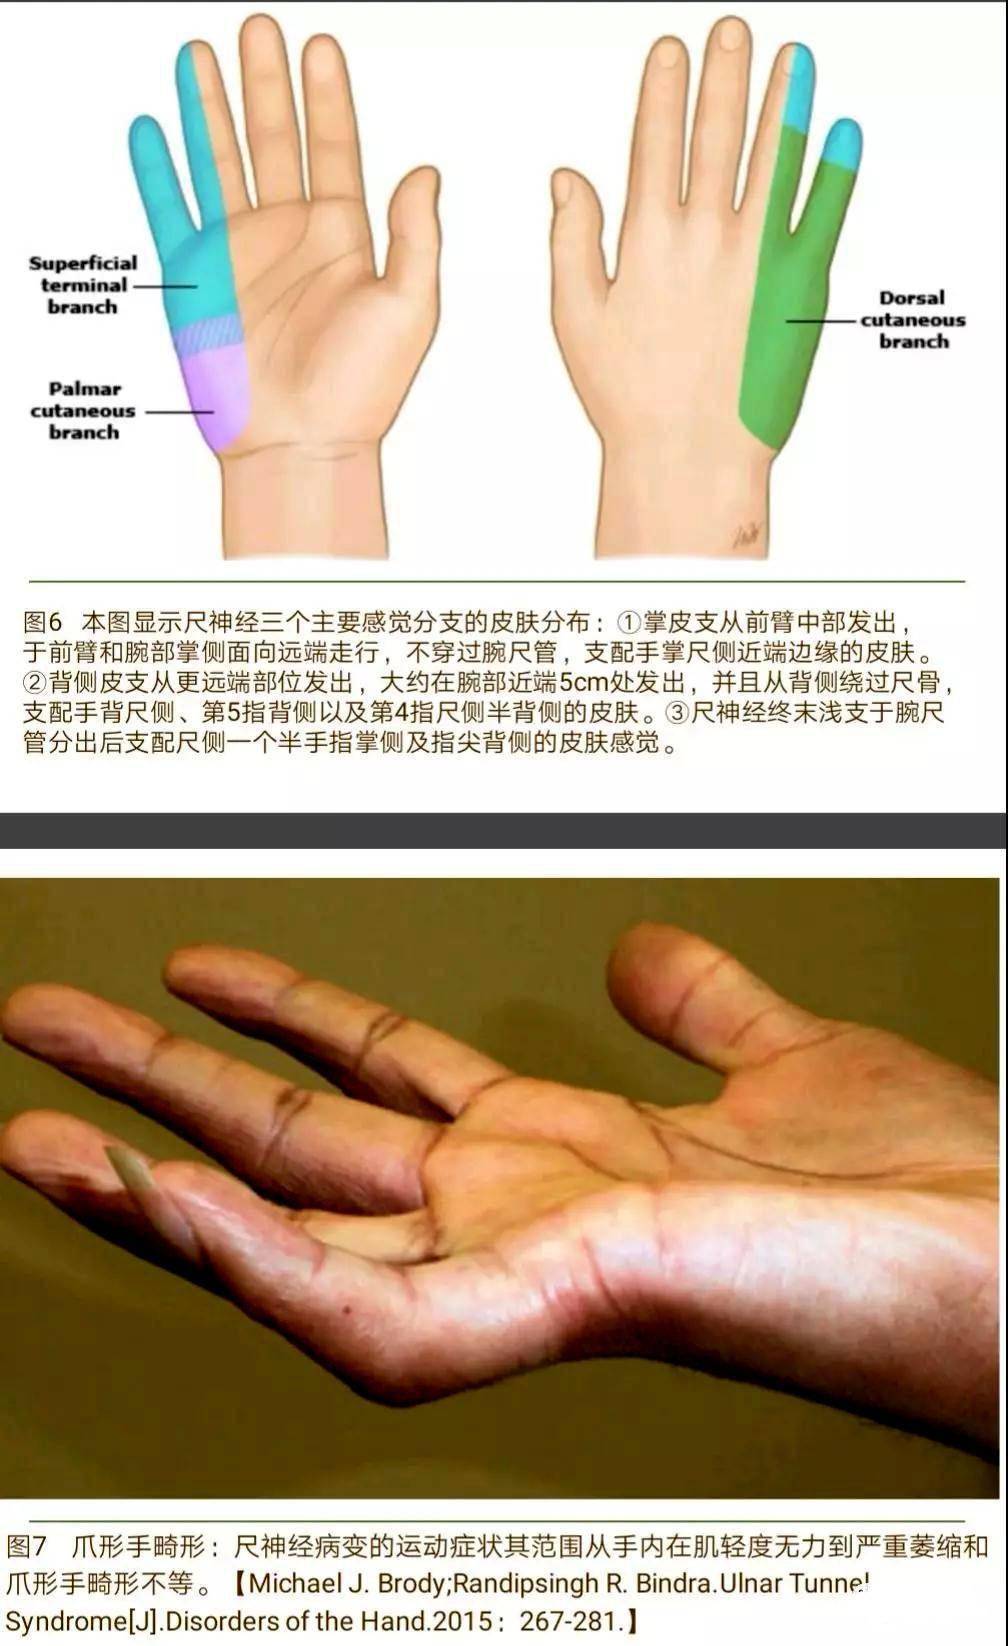 手内在肌萎缩,肌力减退,可出现爪形手畸形.1.